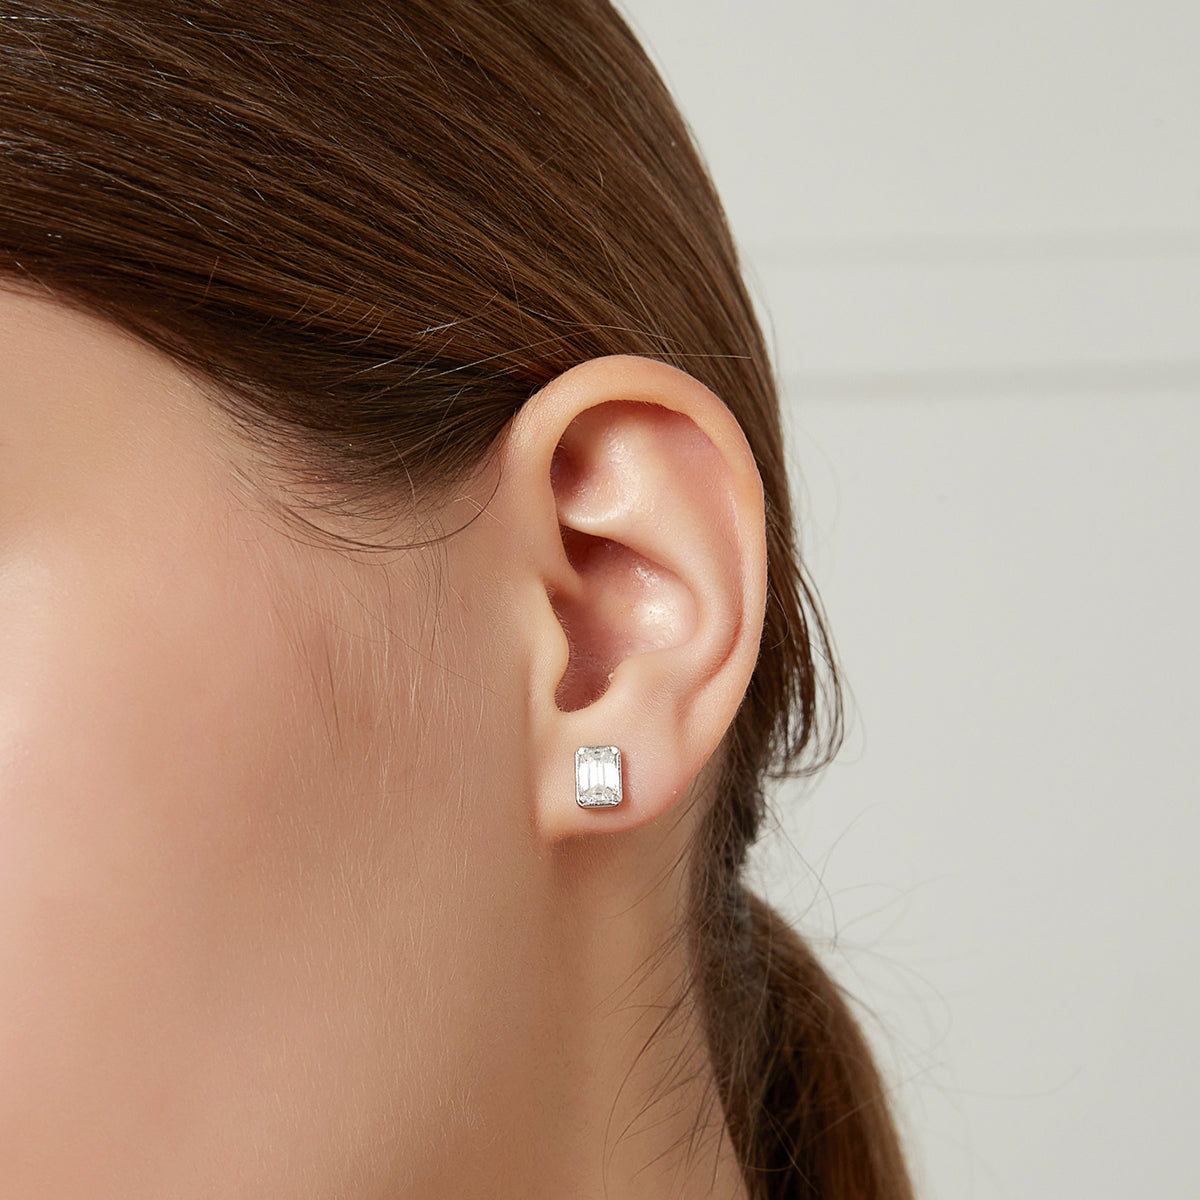 image of woman  ear wearing S925 Sterling Silver Stud Earrings